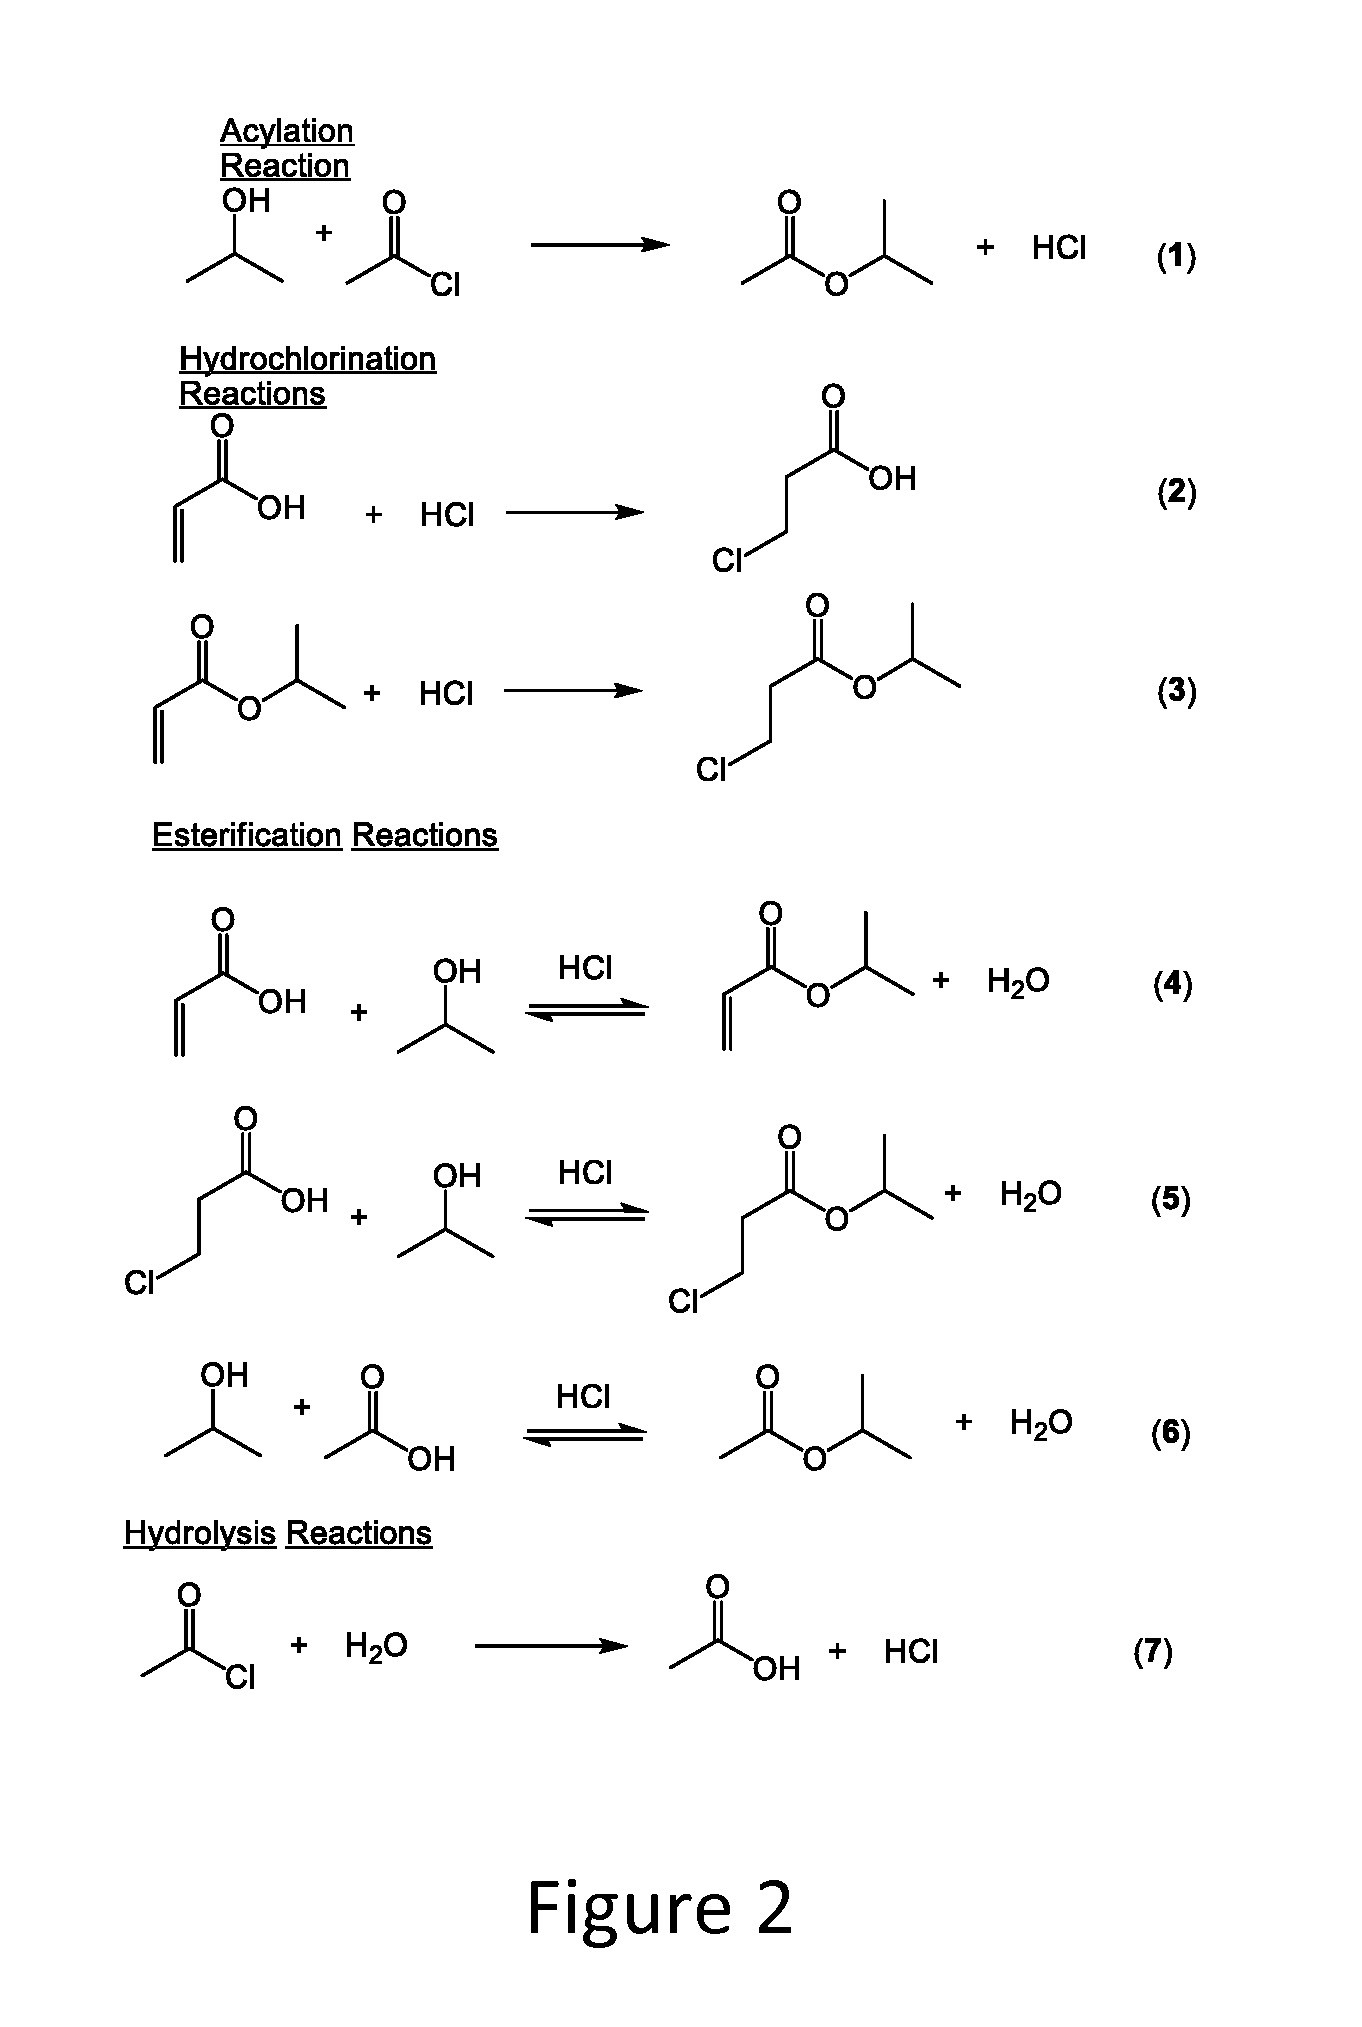 Hydrochlorination of electron-deficient alkenes